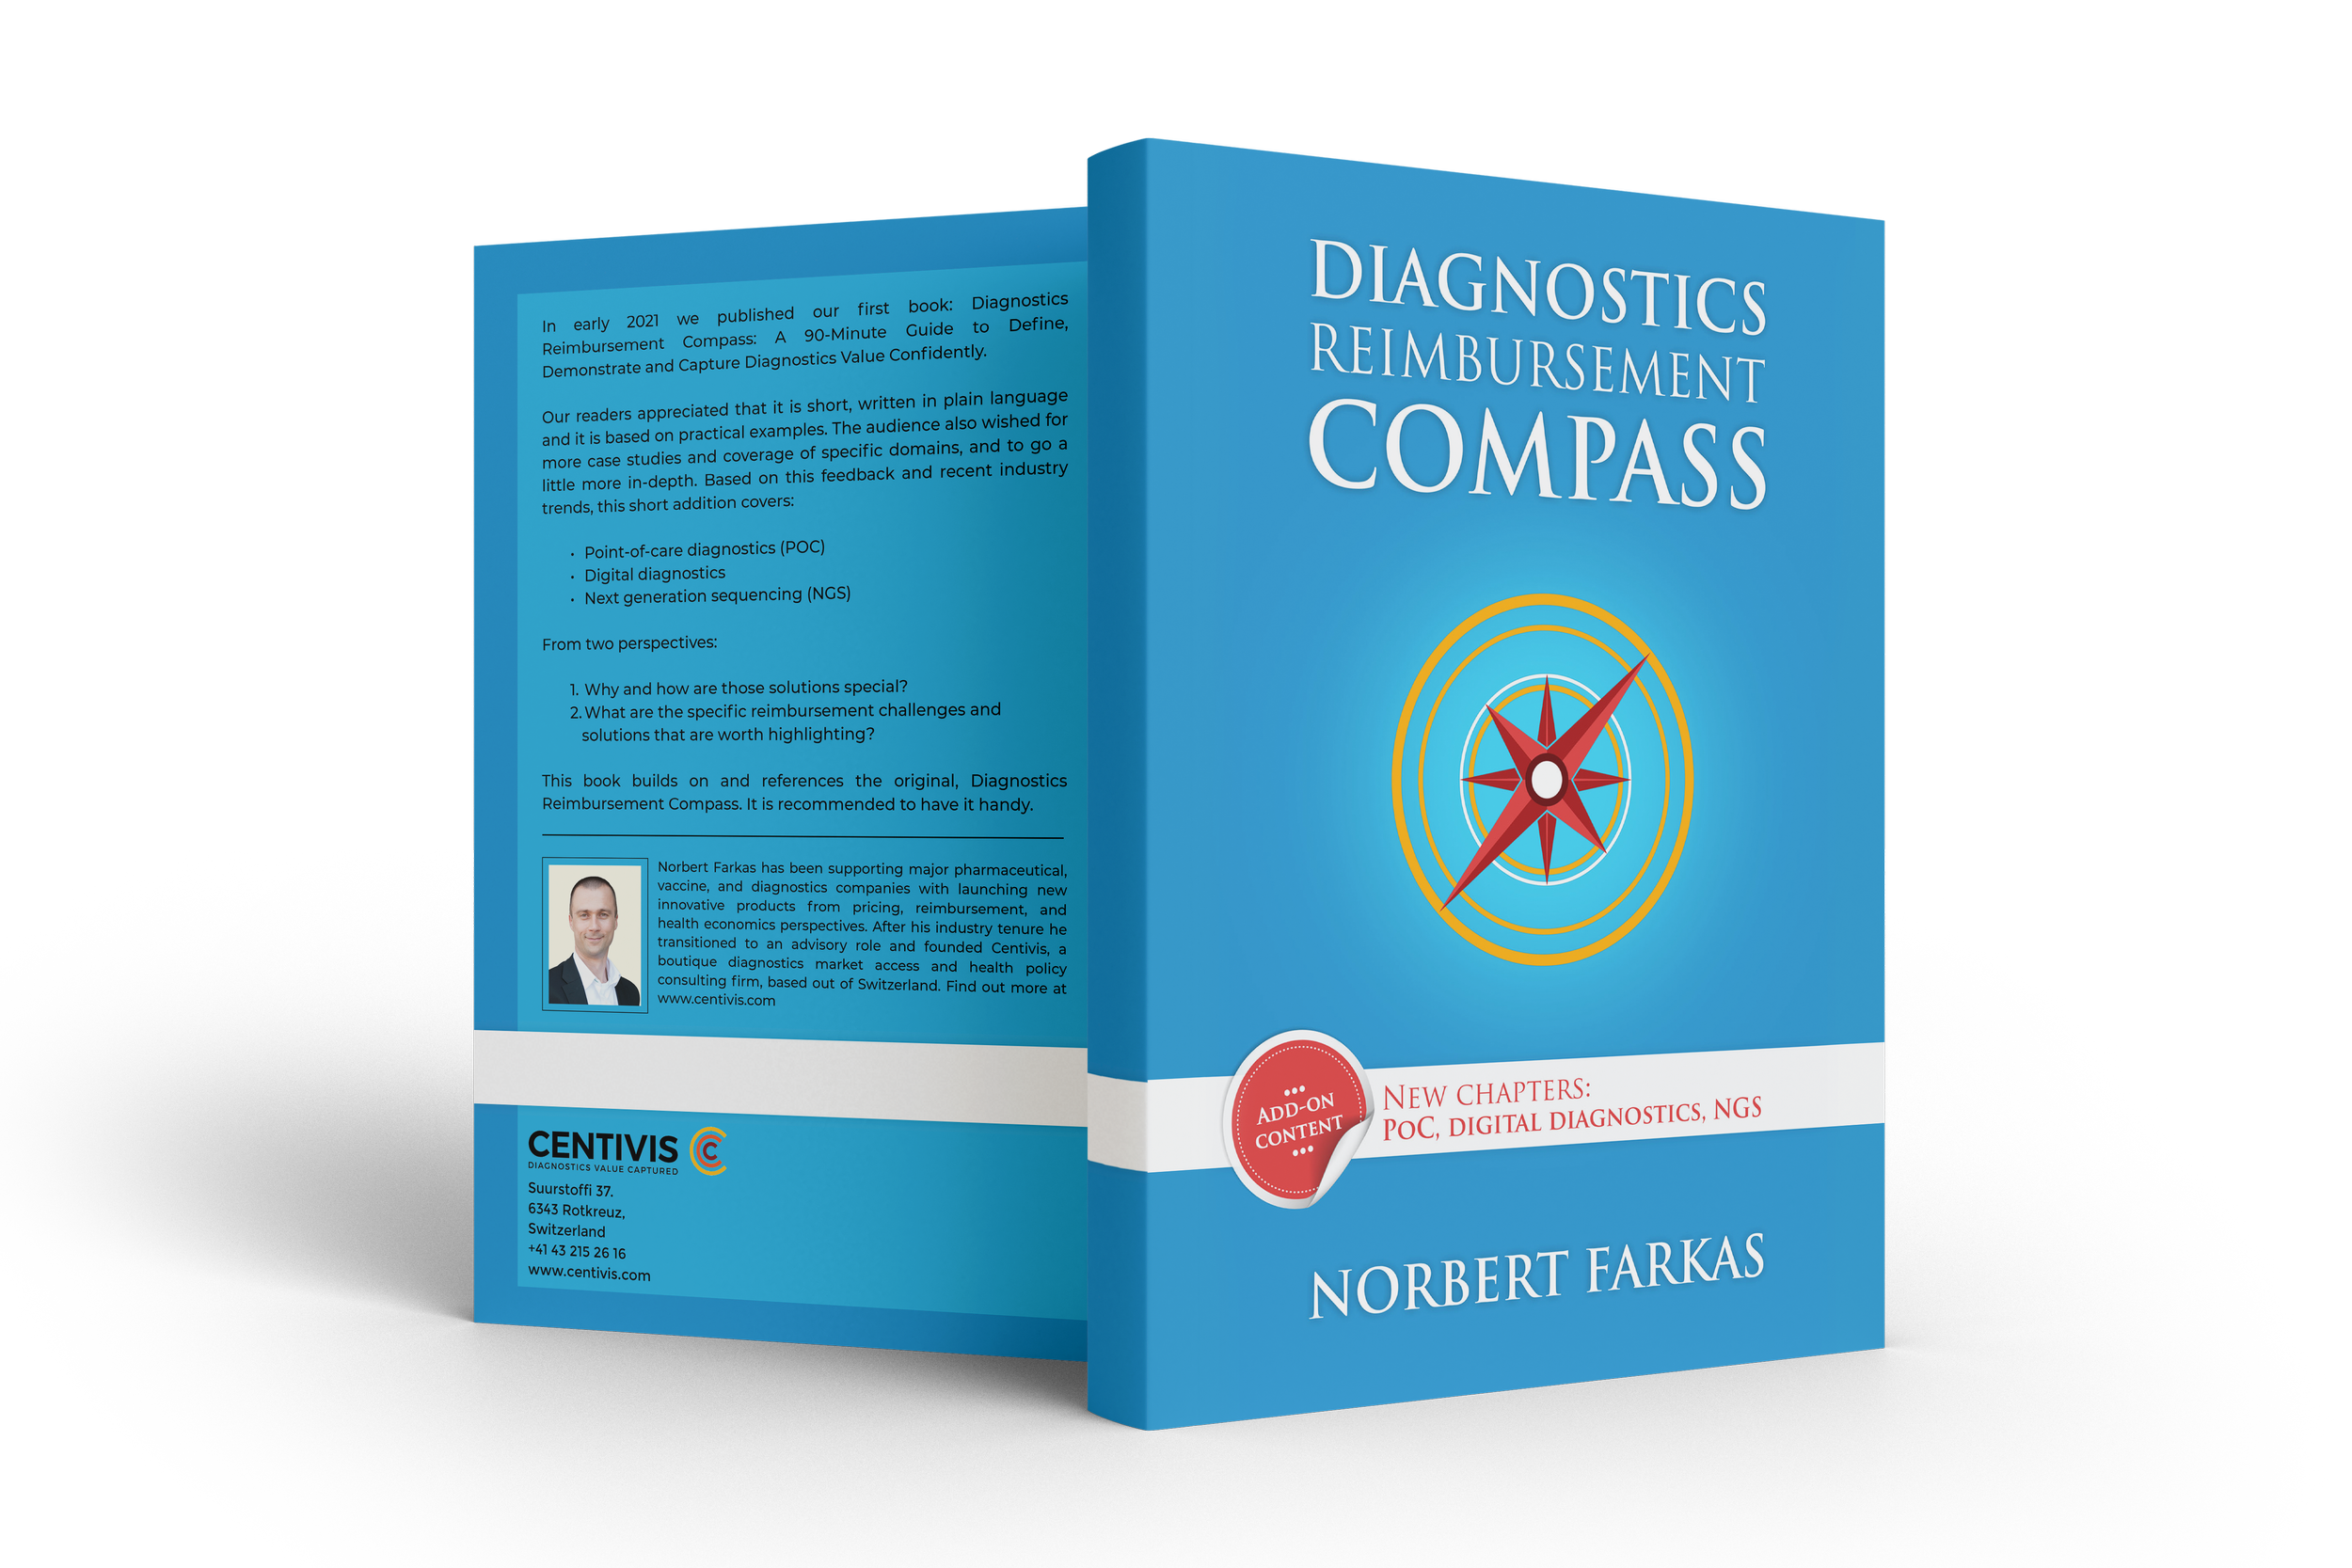 Diagnostics Reimbursement Compass